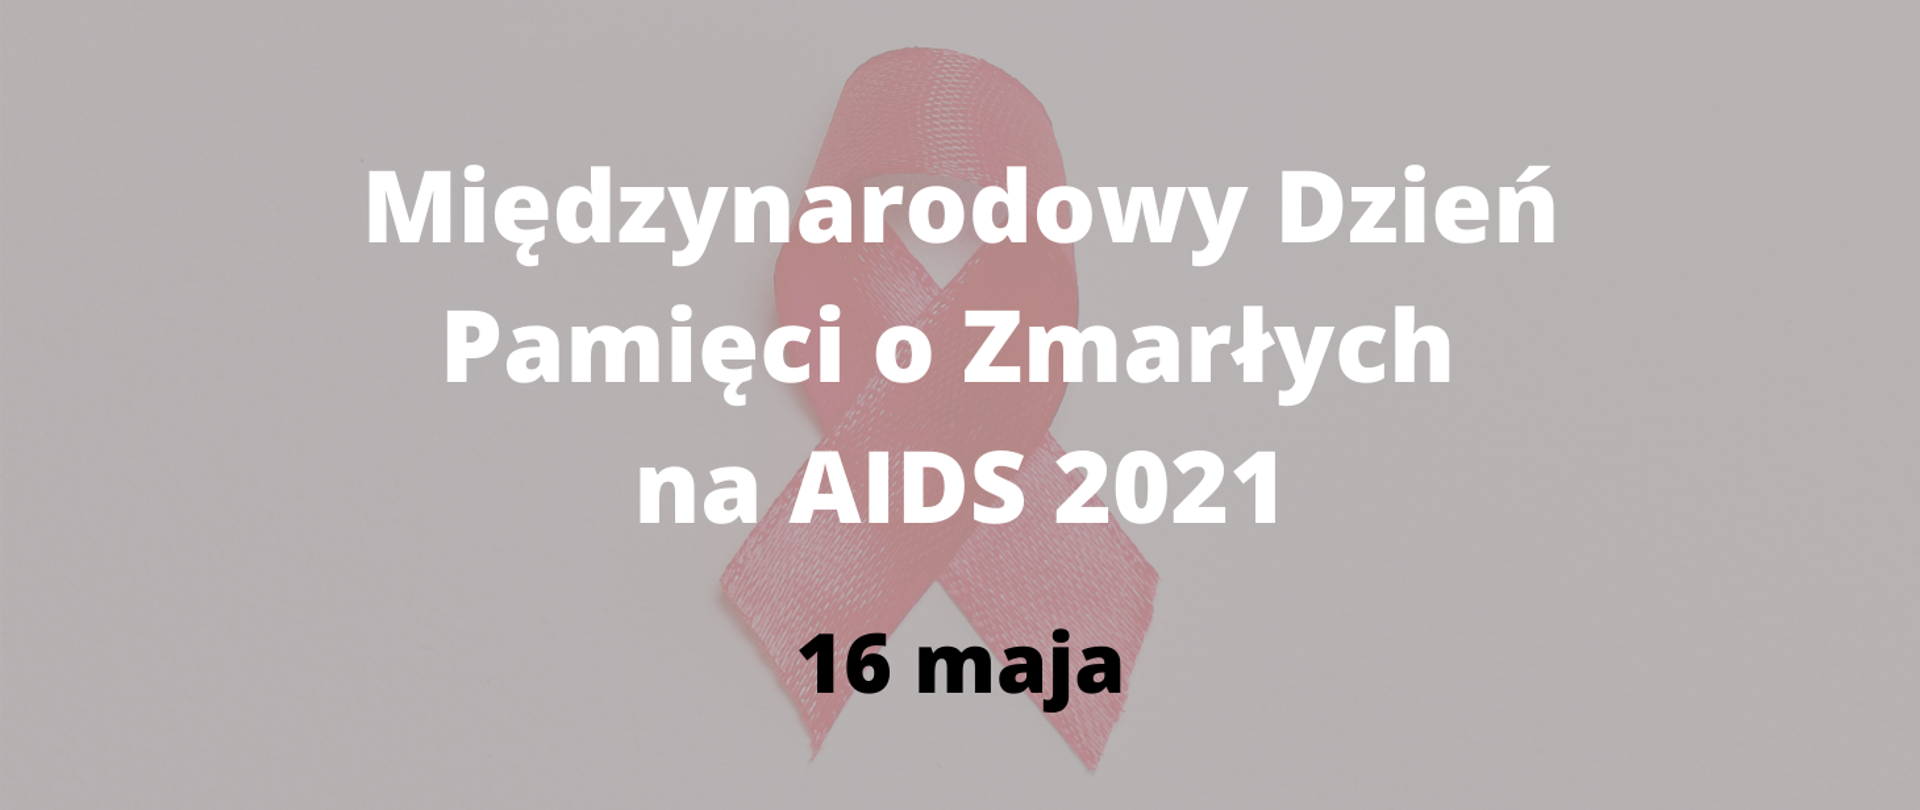 Międzynarodowy Dzień Pamięci o Zmarłych na AIDS 2021 16 maja. W tle czerwona kokardka